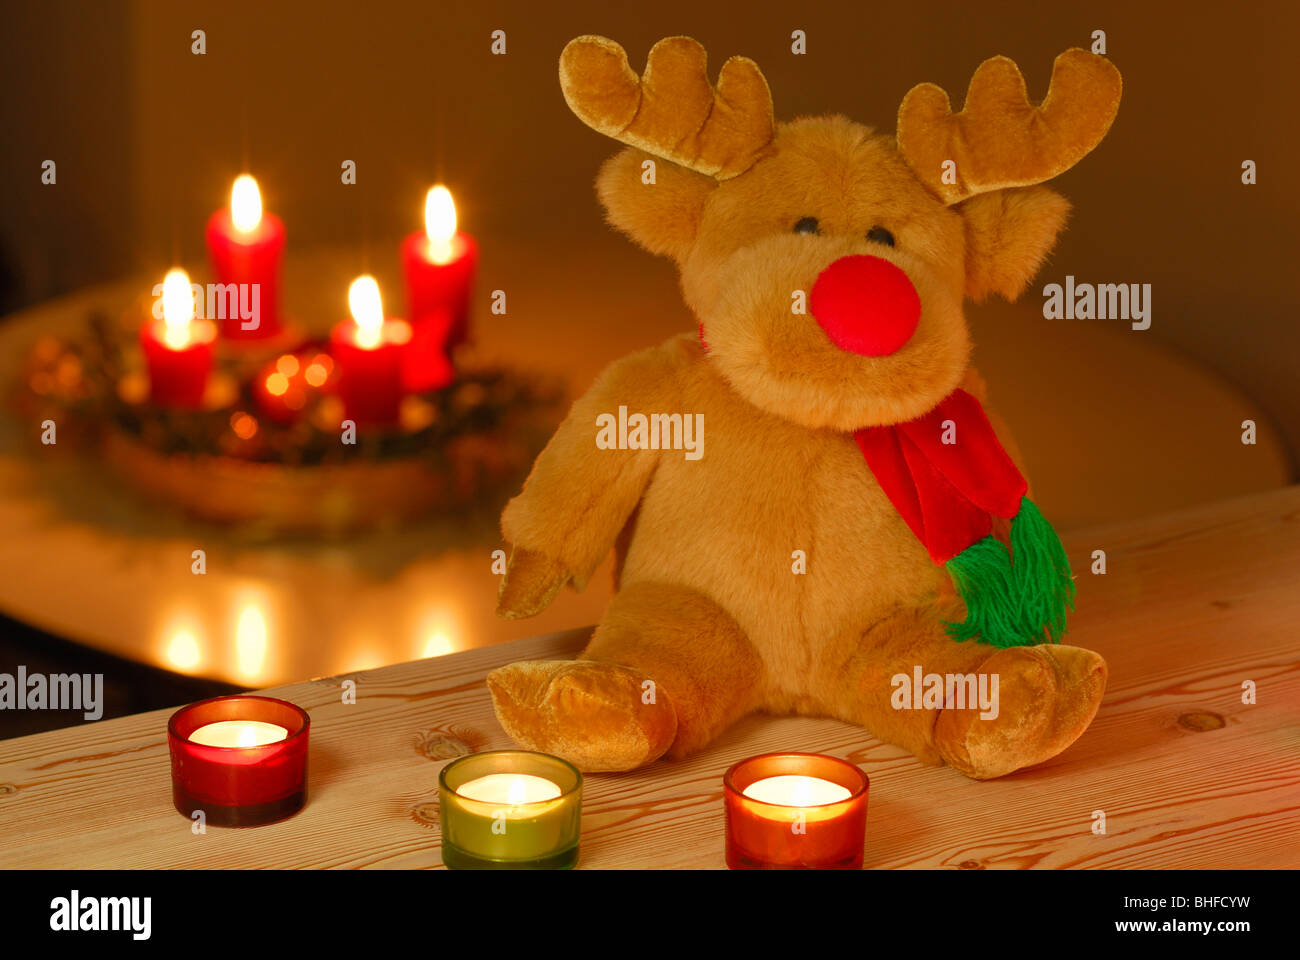 Rudolph die Red-Nosed Reindeer als ausgestopfte Tier sitzen vor brennenden Kerzen, mit Adventskranz im Hintergrund Stockfoto